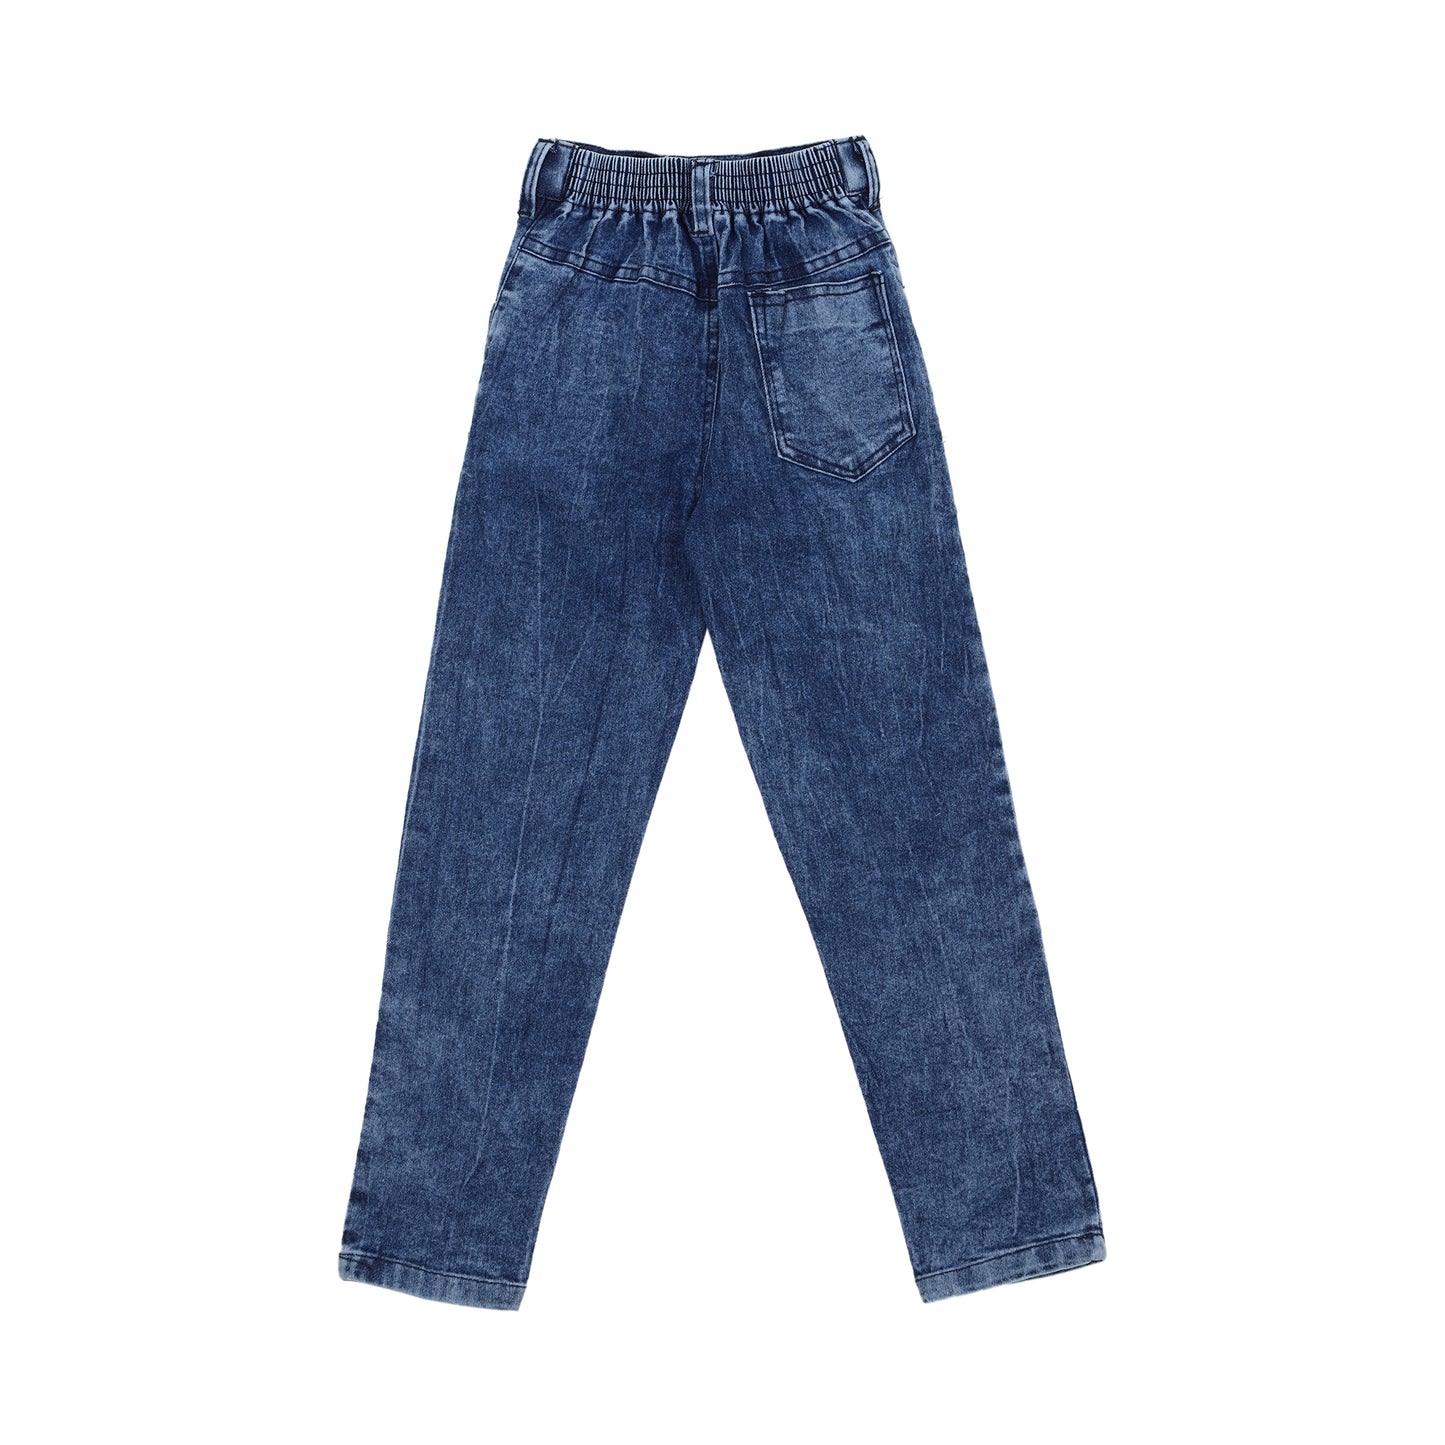 Denim Jeans for Boys - 4